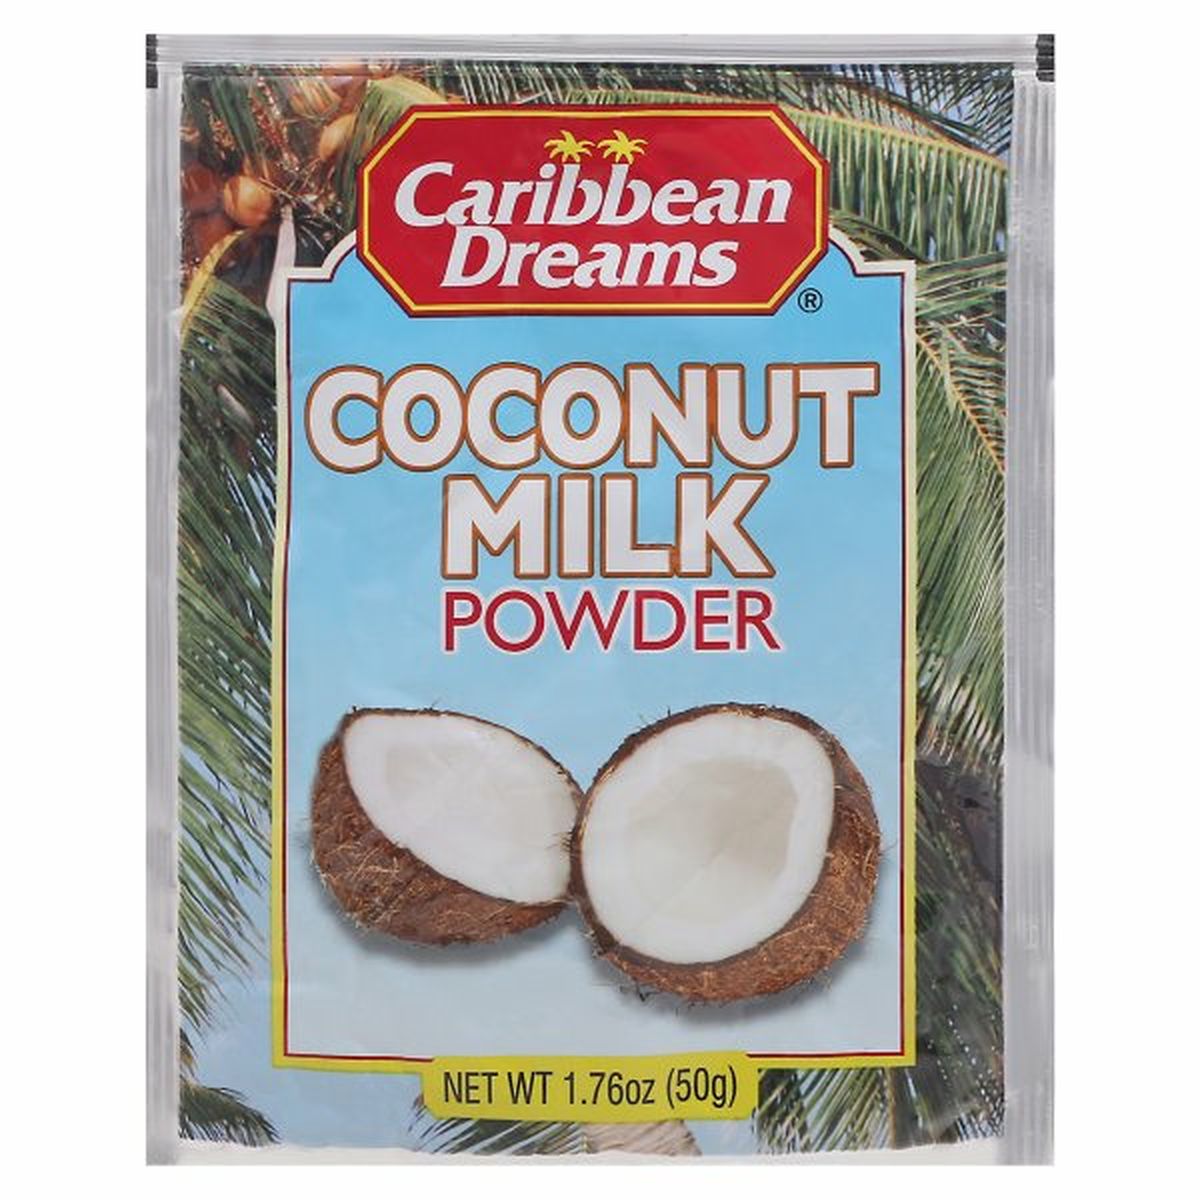 Calories in Caribbean Dreams Coconut Milk Powder